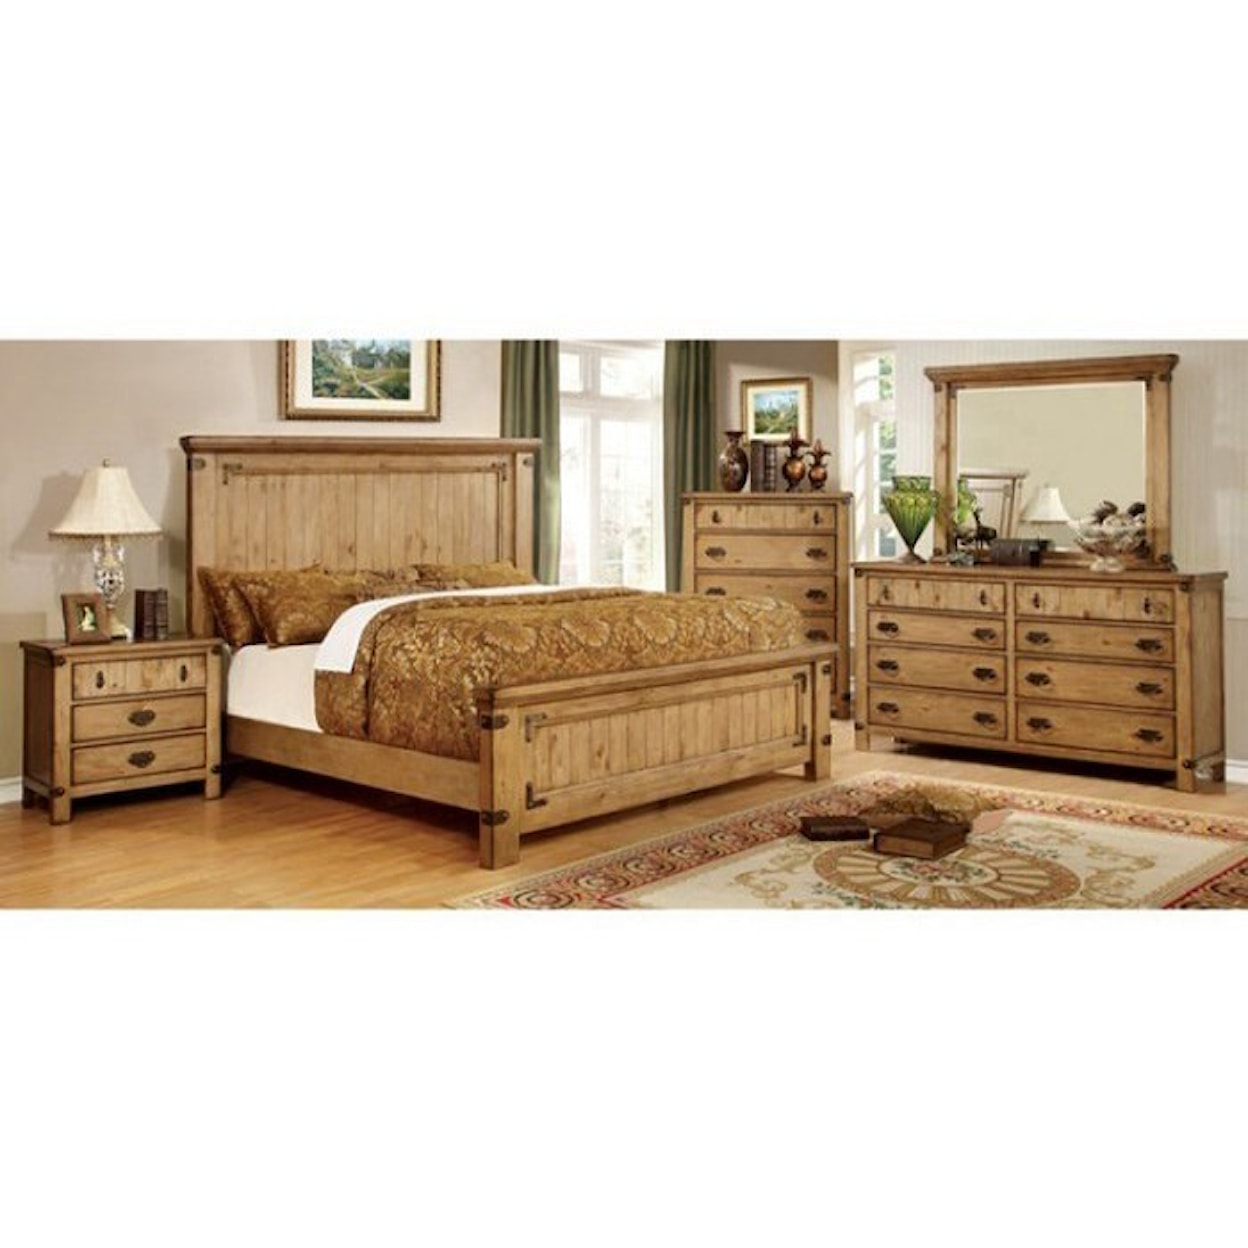 Furniture of America Pioneer California King Bedroom Group